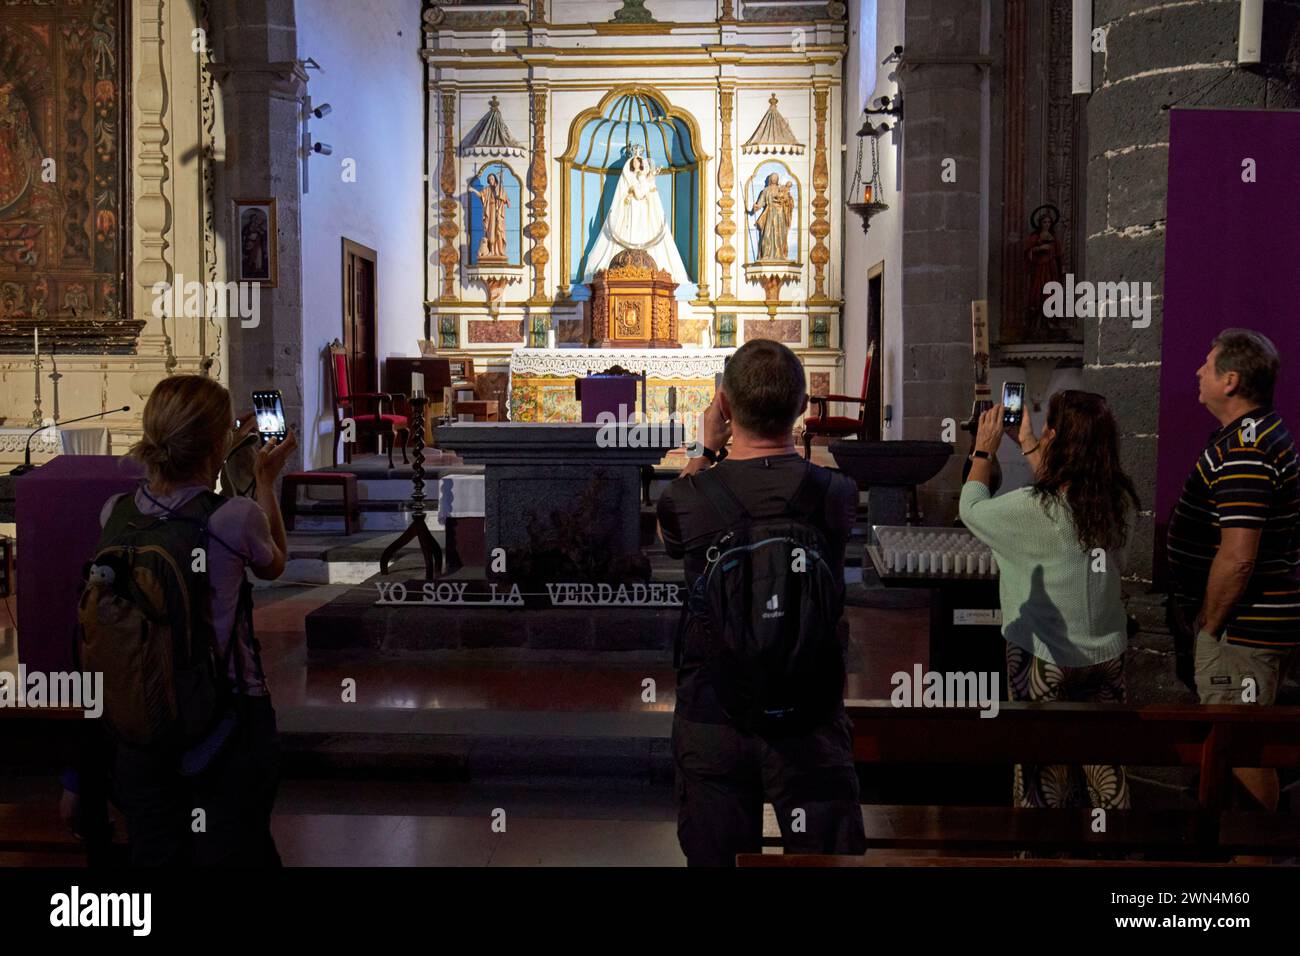 Touristen fotografieren das Innere des Altars der nuestra senora de los remedios Kirche Yaiza, Lanzarote, Kanarischen Inseln, spanien Stockfoto